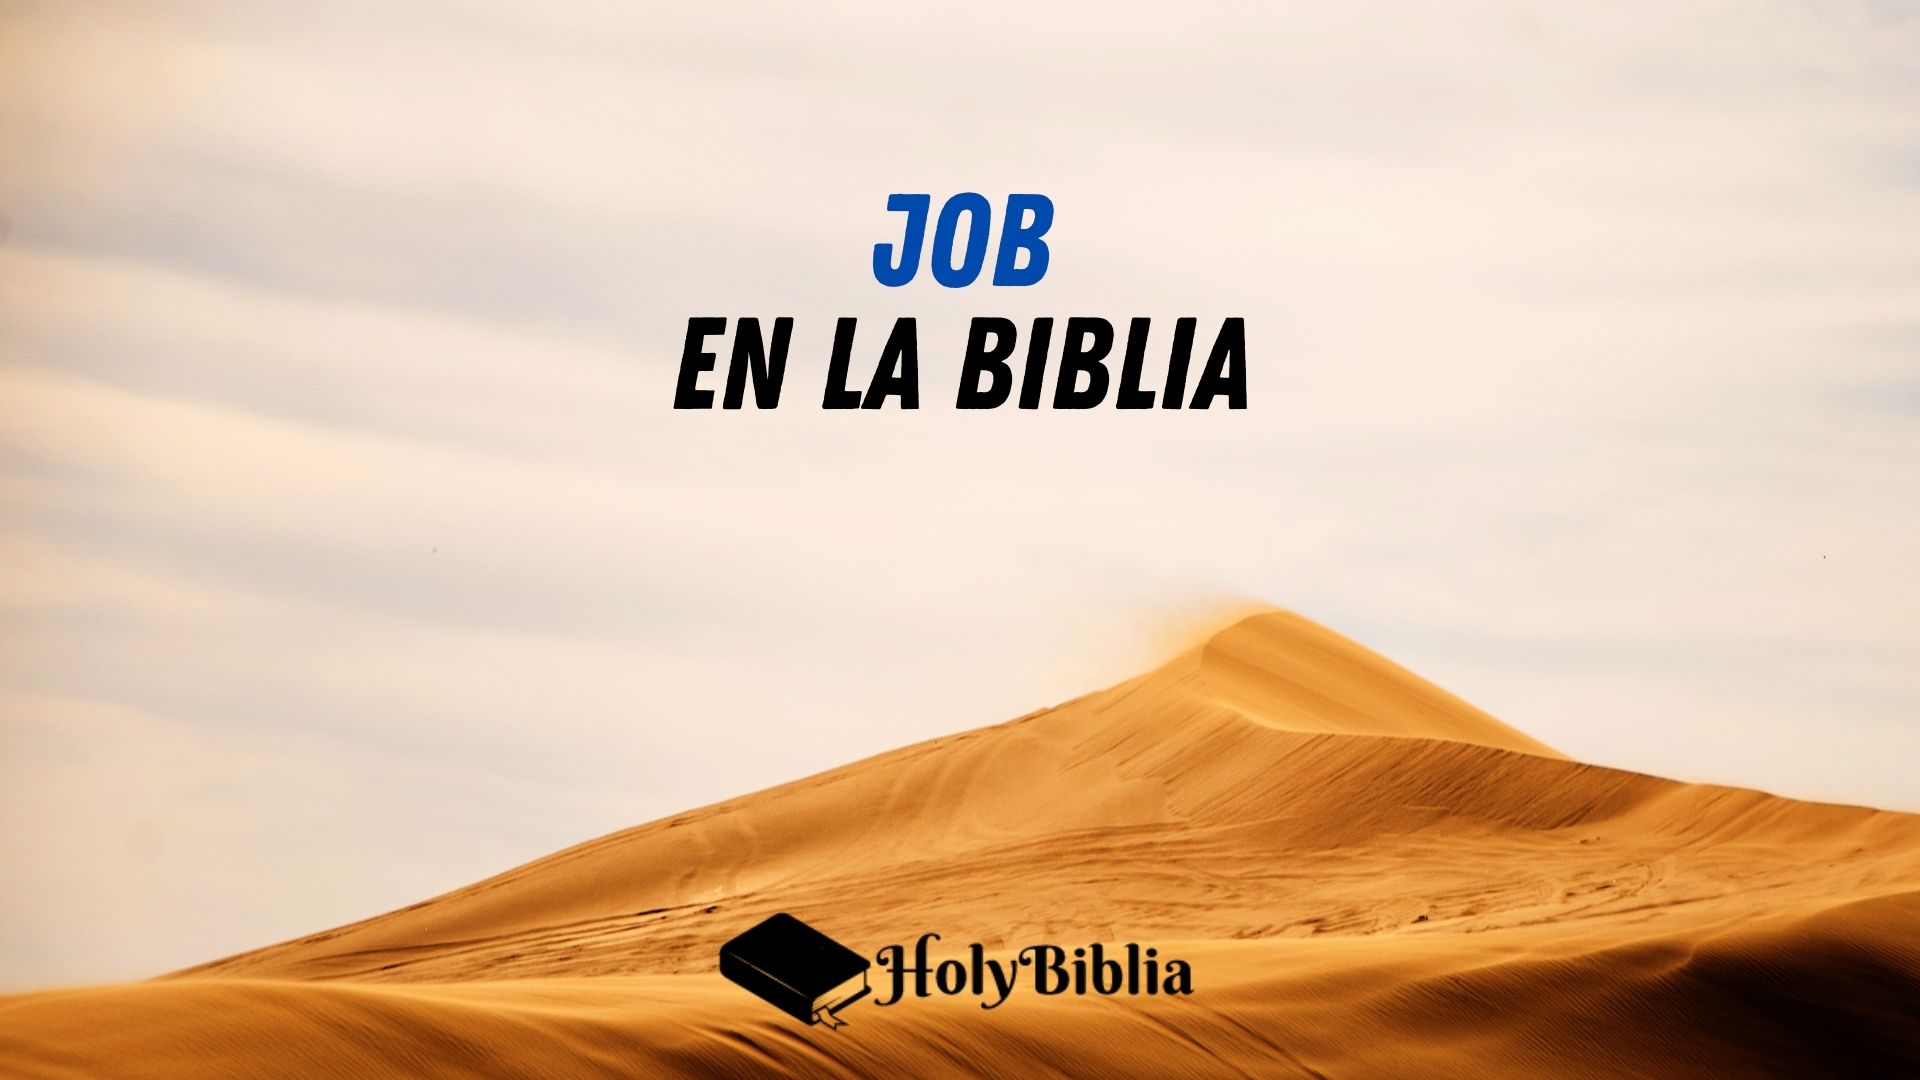 La historia de Job en la Biblia.